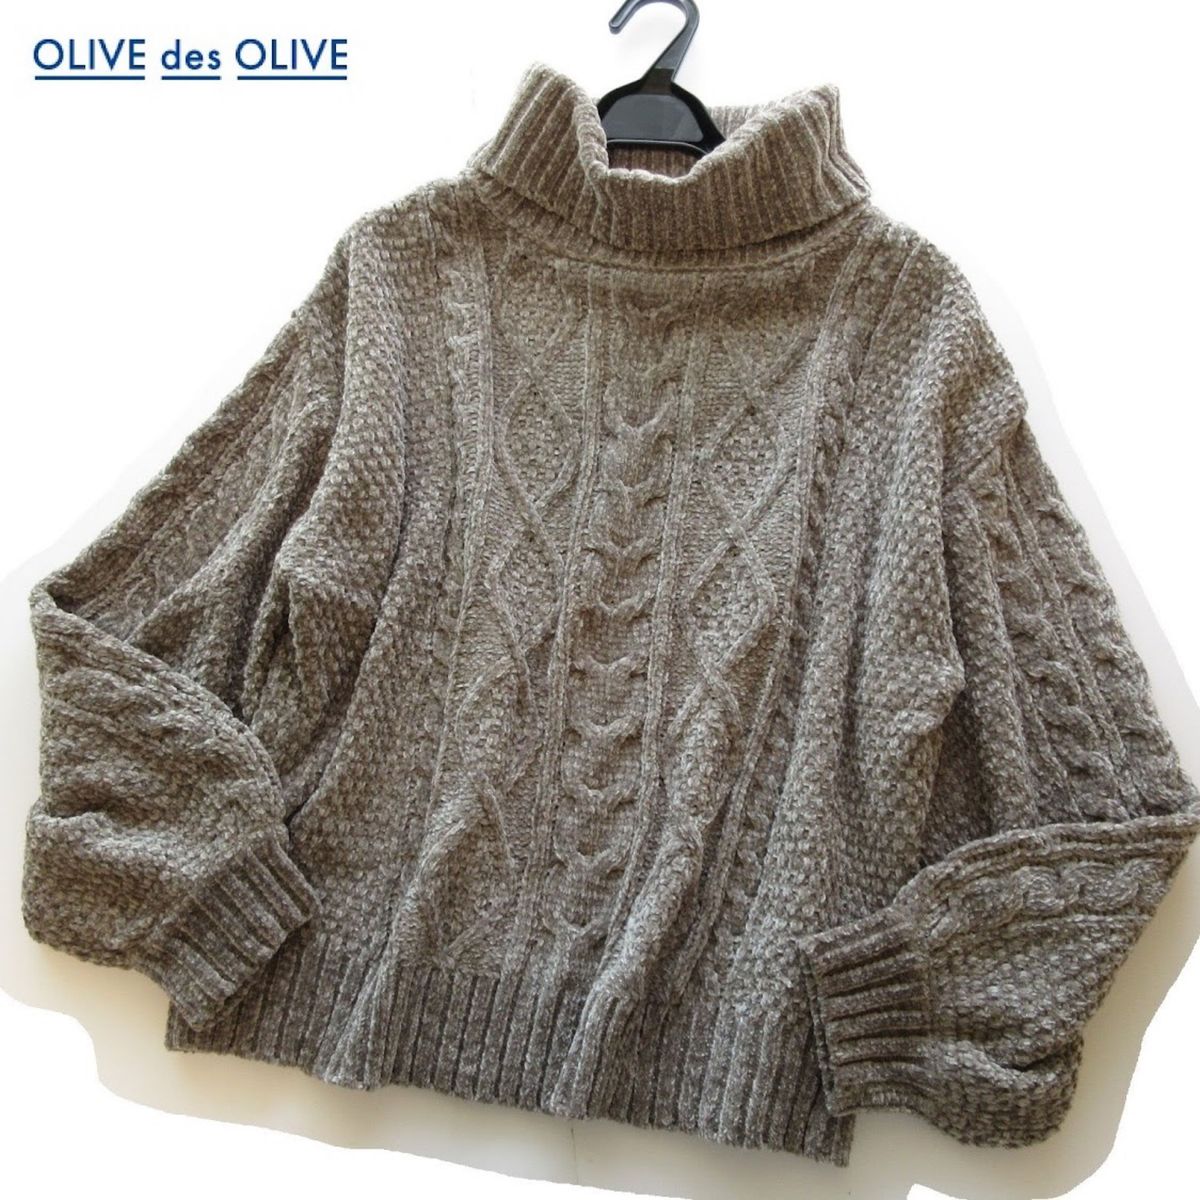 オリーブデオリーブ OLIVE des OLIVE セーター ニット プルオーバー